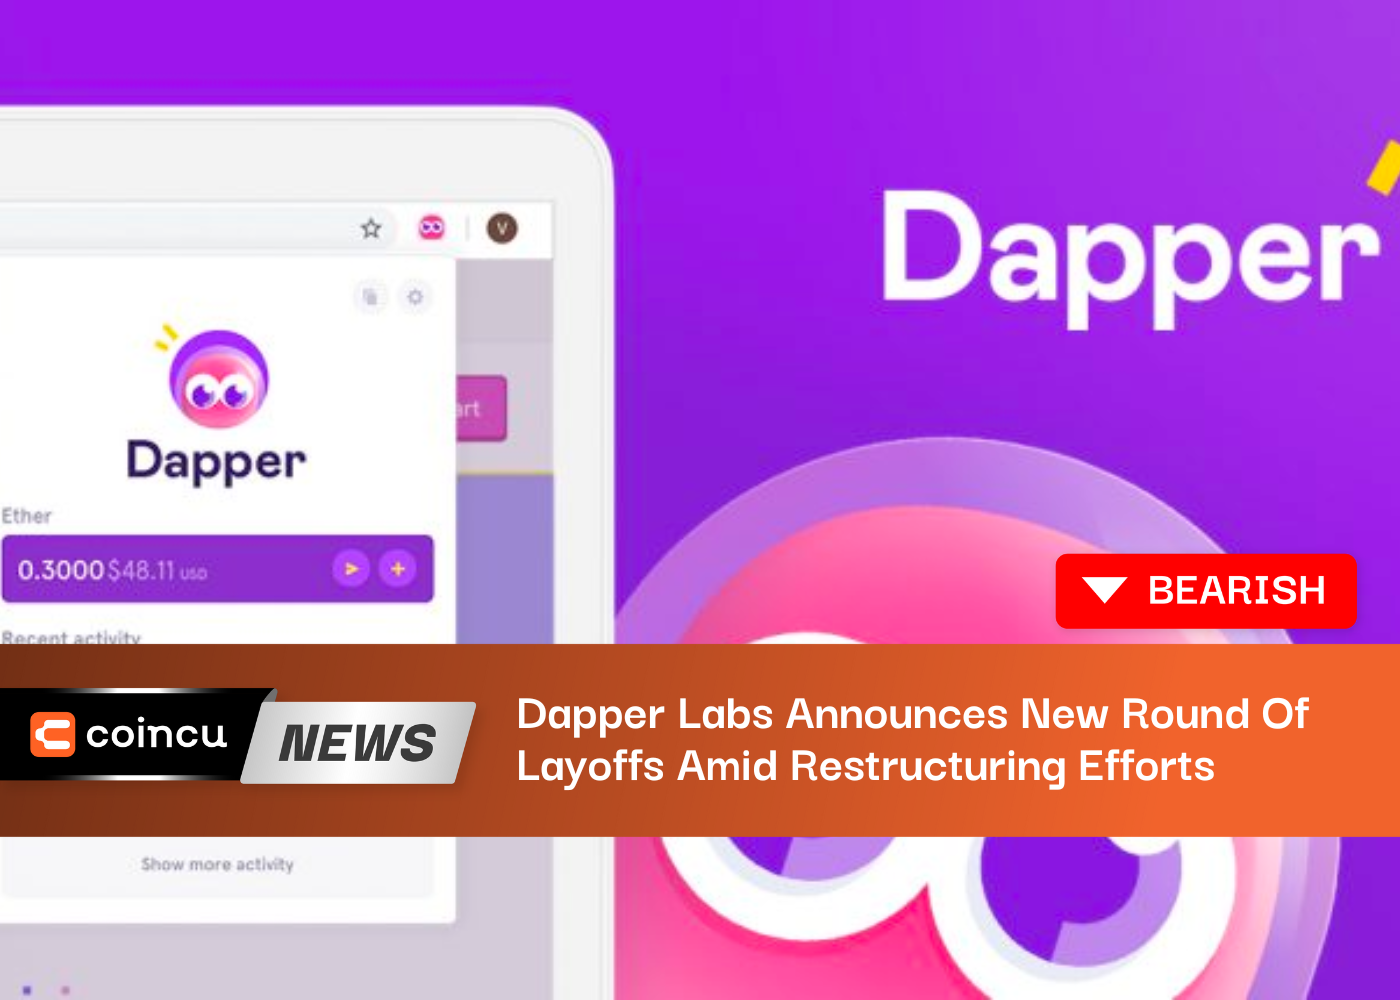 Dapper Labs annonce une nouvelle série de licenciements dans le cadre d'efforts de restructuration